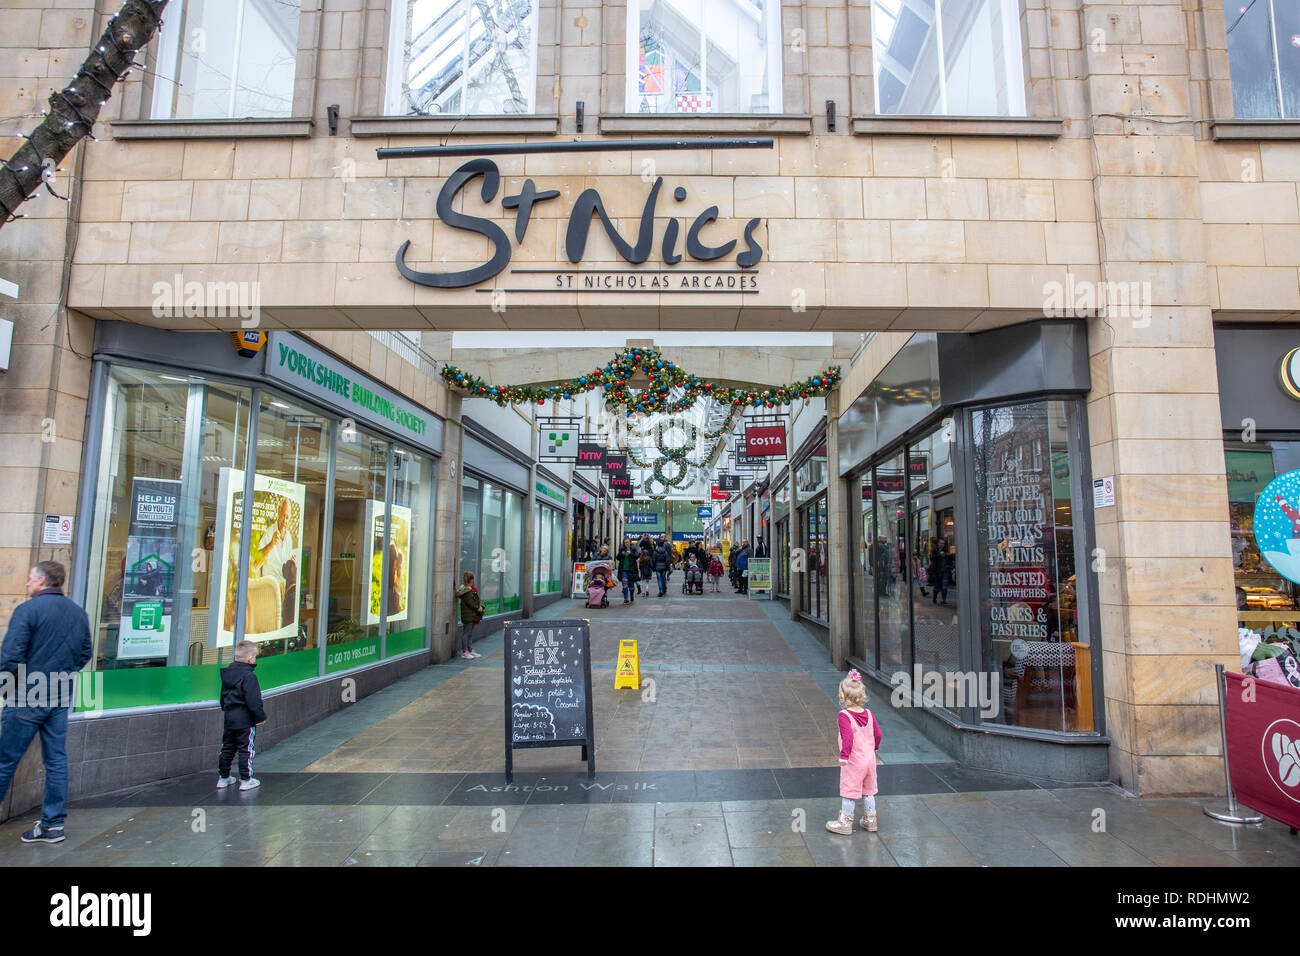 St-nics Einkaufszentrum Arkade in der Stadt Lancaster, Lancashire, England Stockfoto